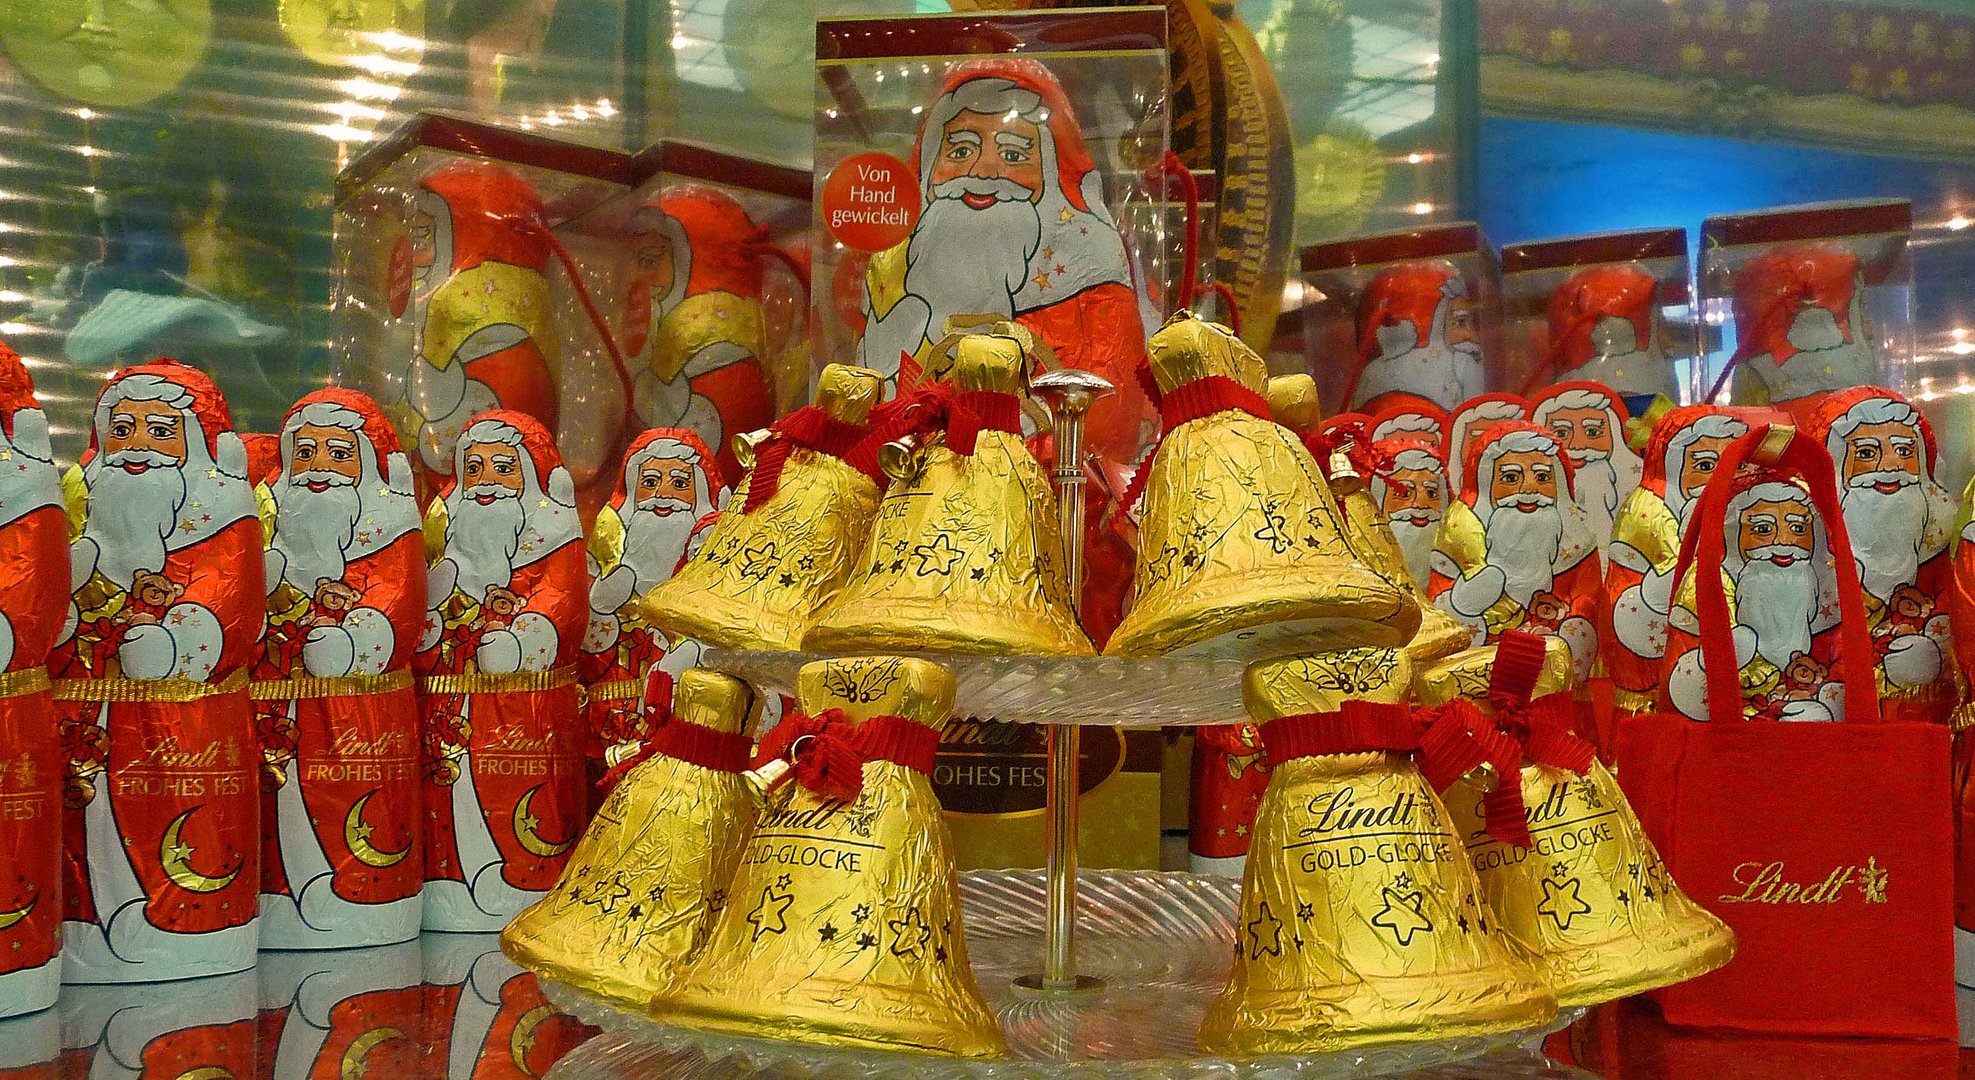 Weihnachtliches Handwerk an die große Glocke gehängt